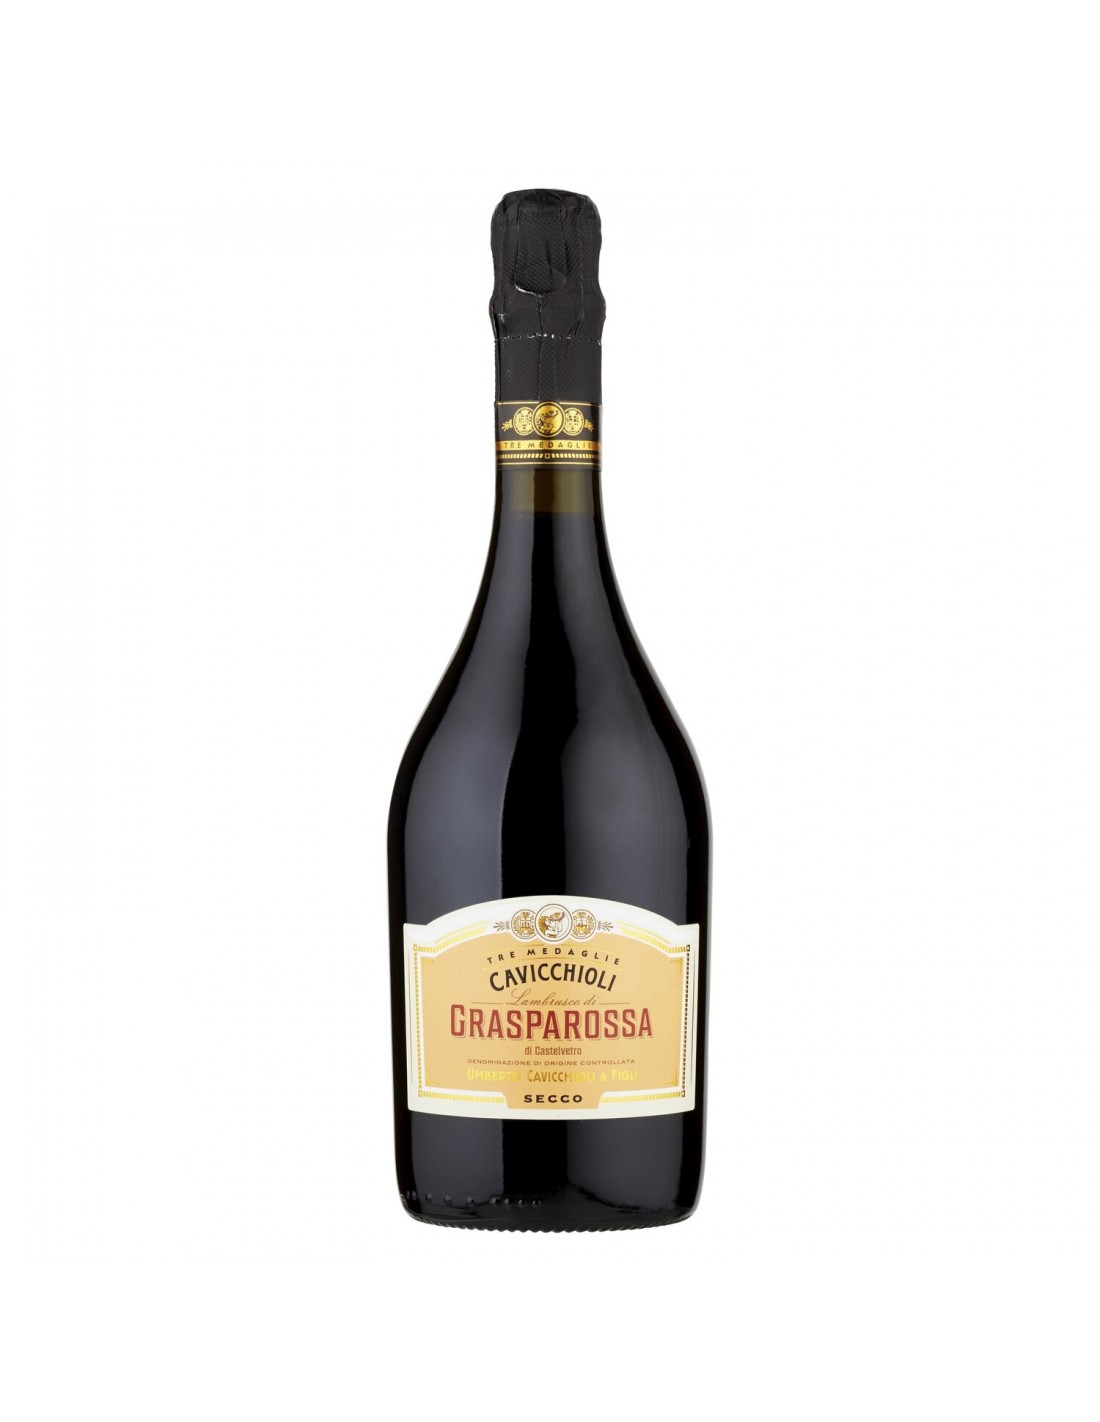 Vin frizzante Cavicchioli Grasparossa Secco, 0.75L, 11% alc., Italia alcooldiscount.ro